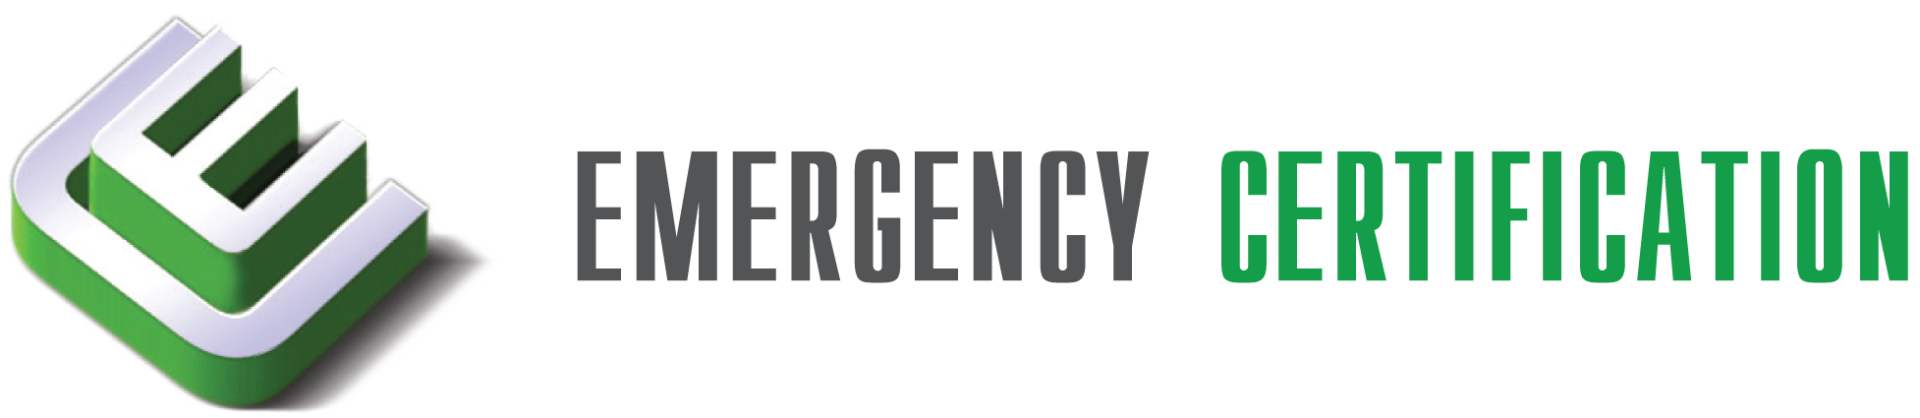 Emergency Certification Logo